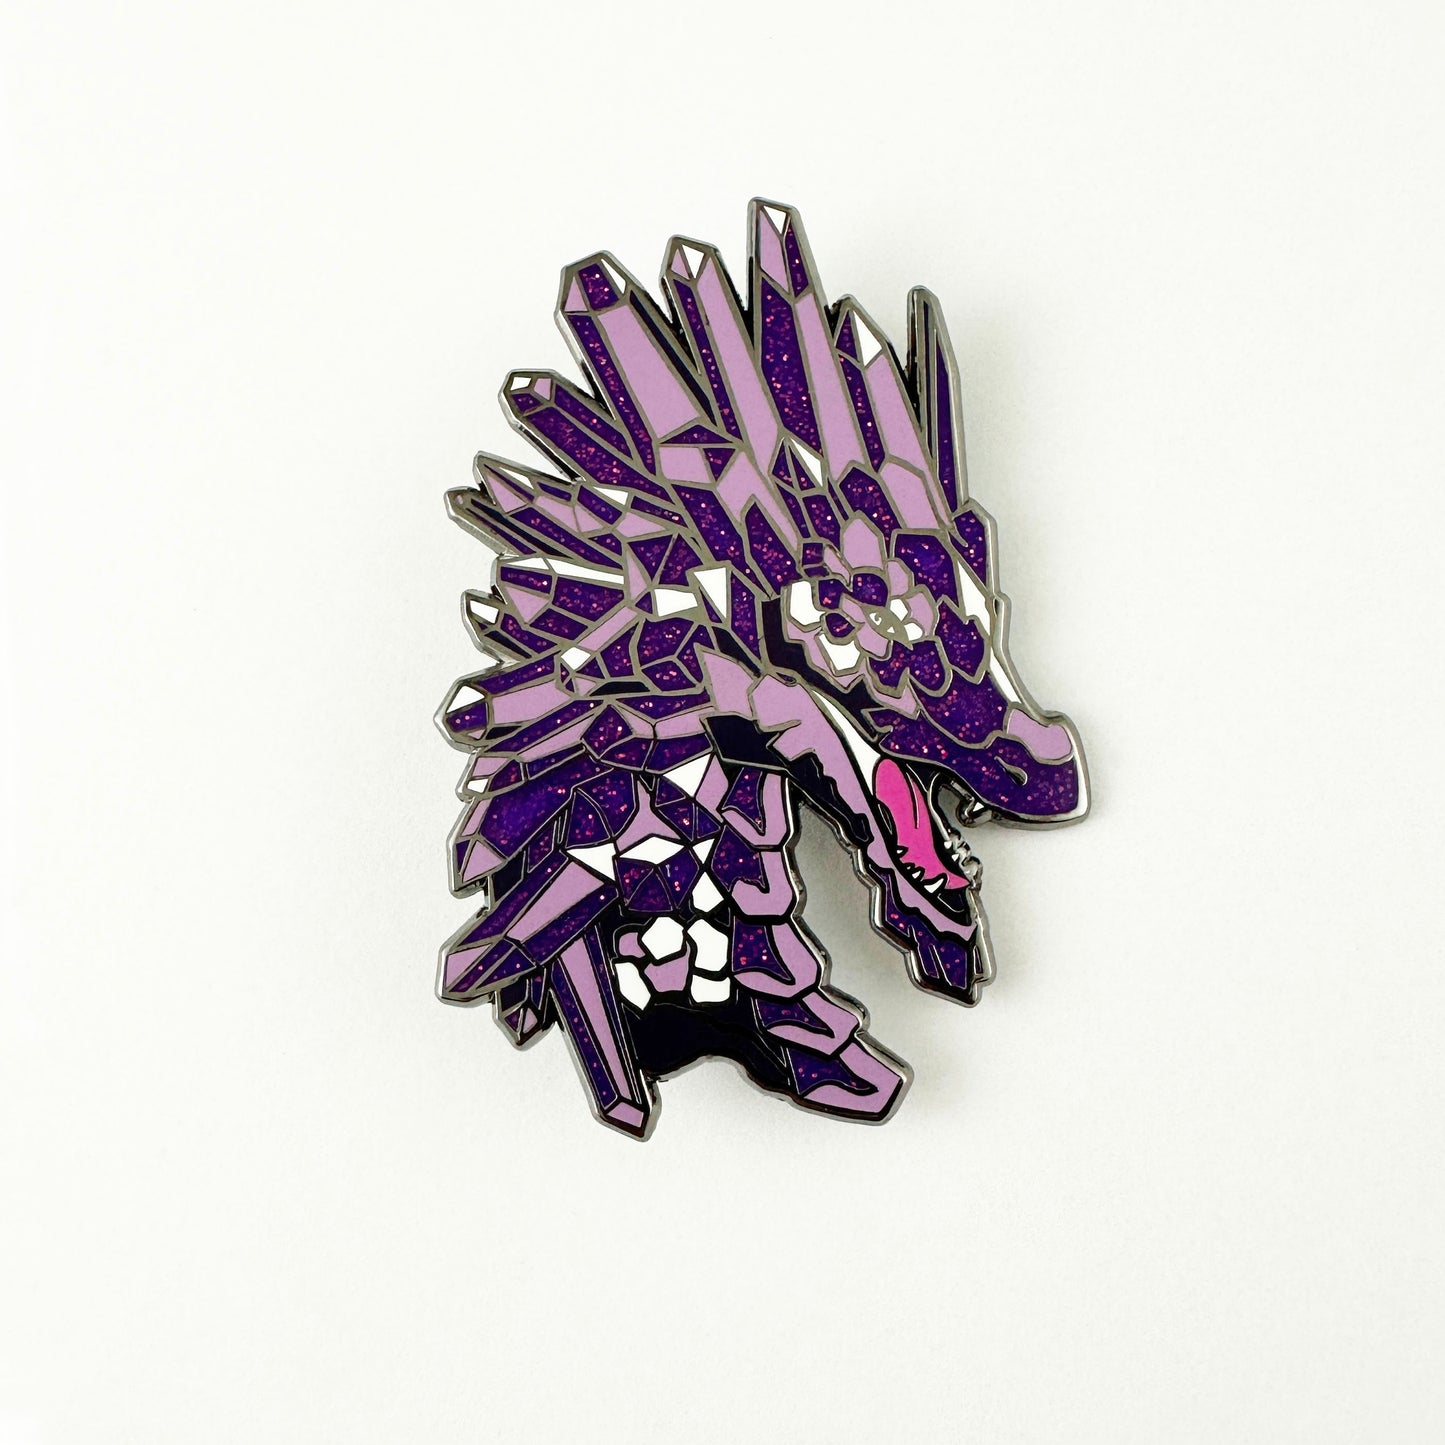 "Amethyst Dragon" Enamel Pin by Katy Lipscomb